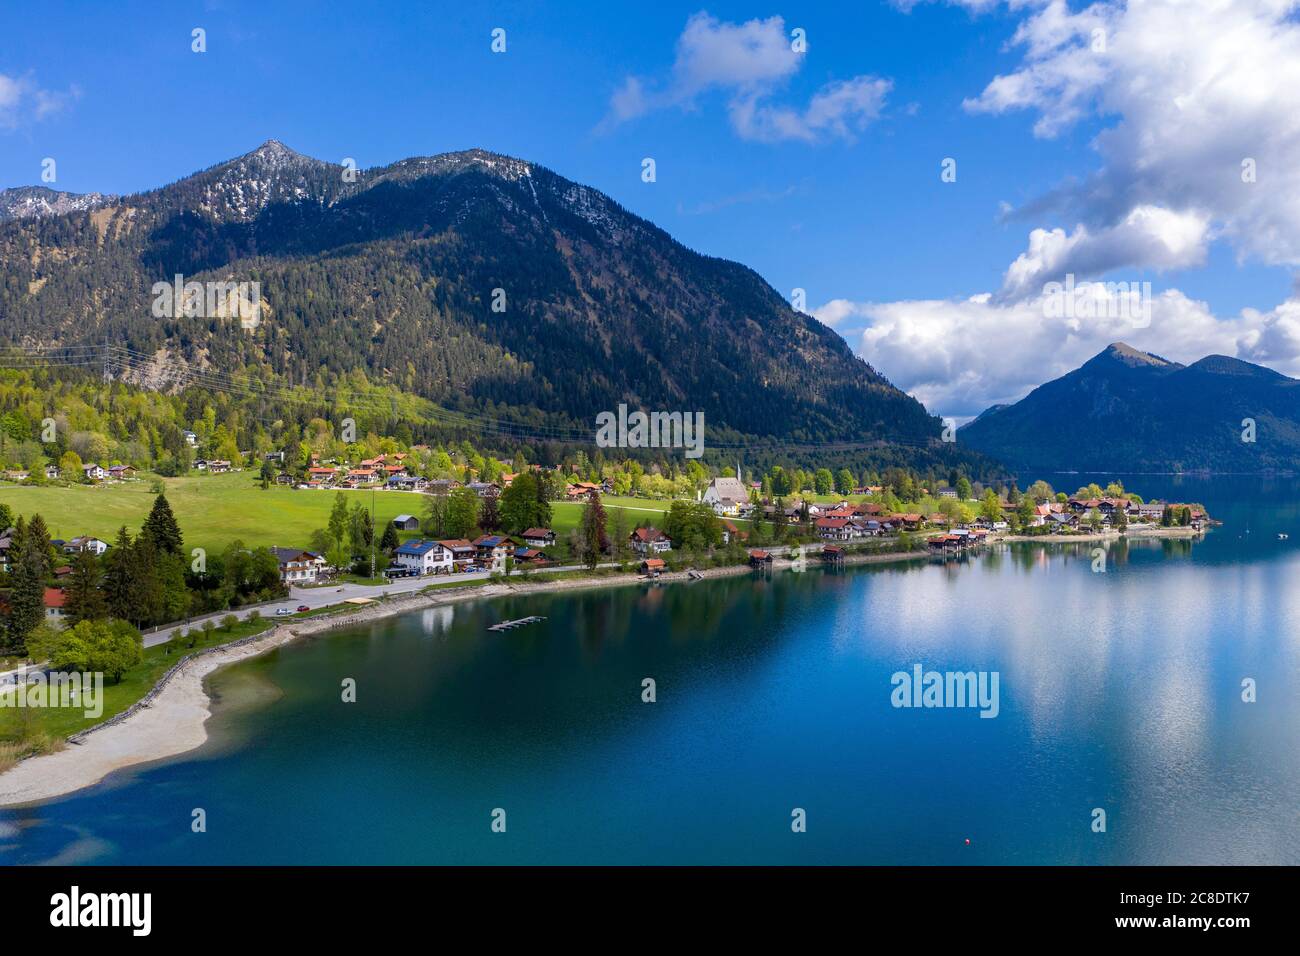 Germania, Baviera, Kochel, villaggio sulla riva del lago di Walchen con Herzogstand montagna in background Foto Stock